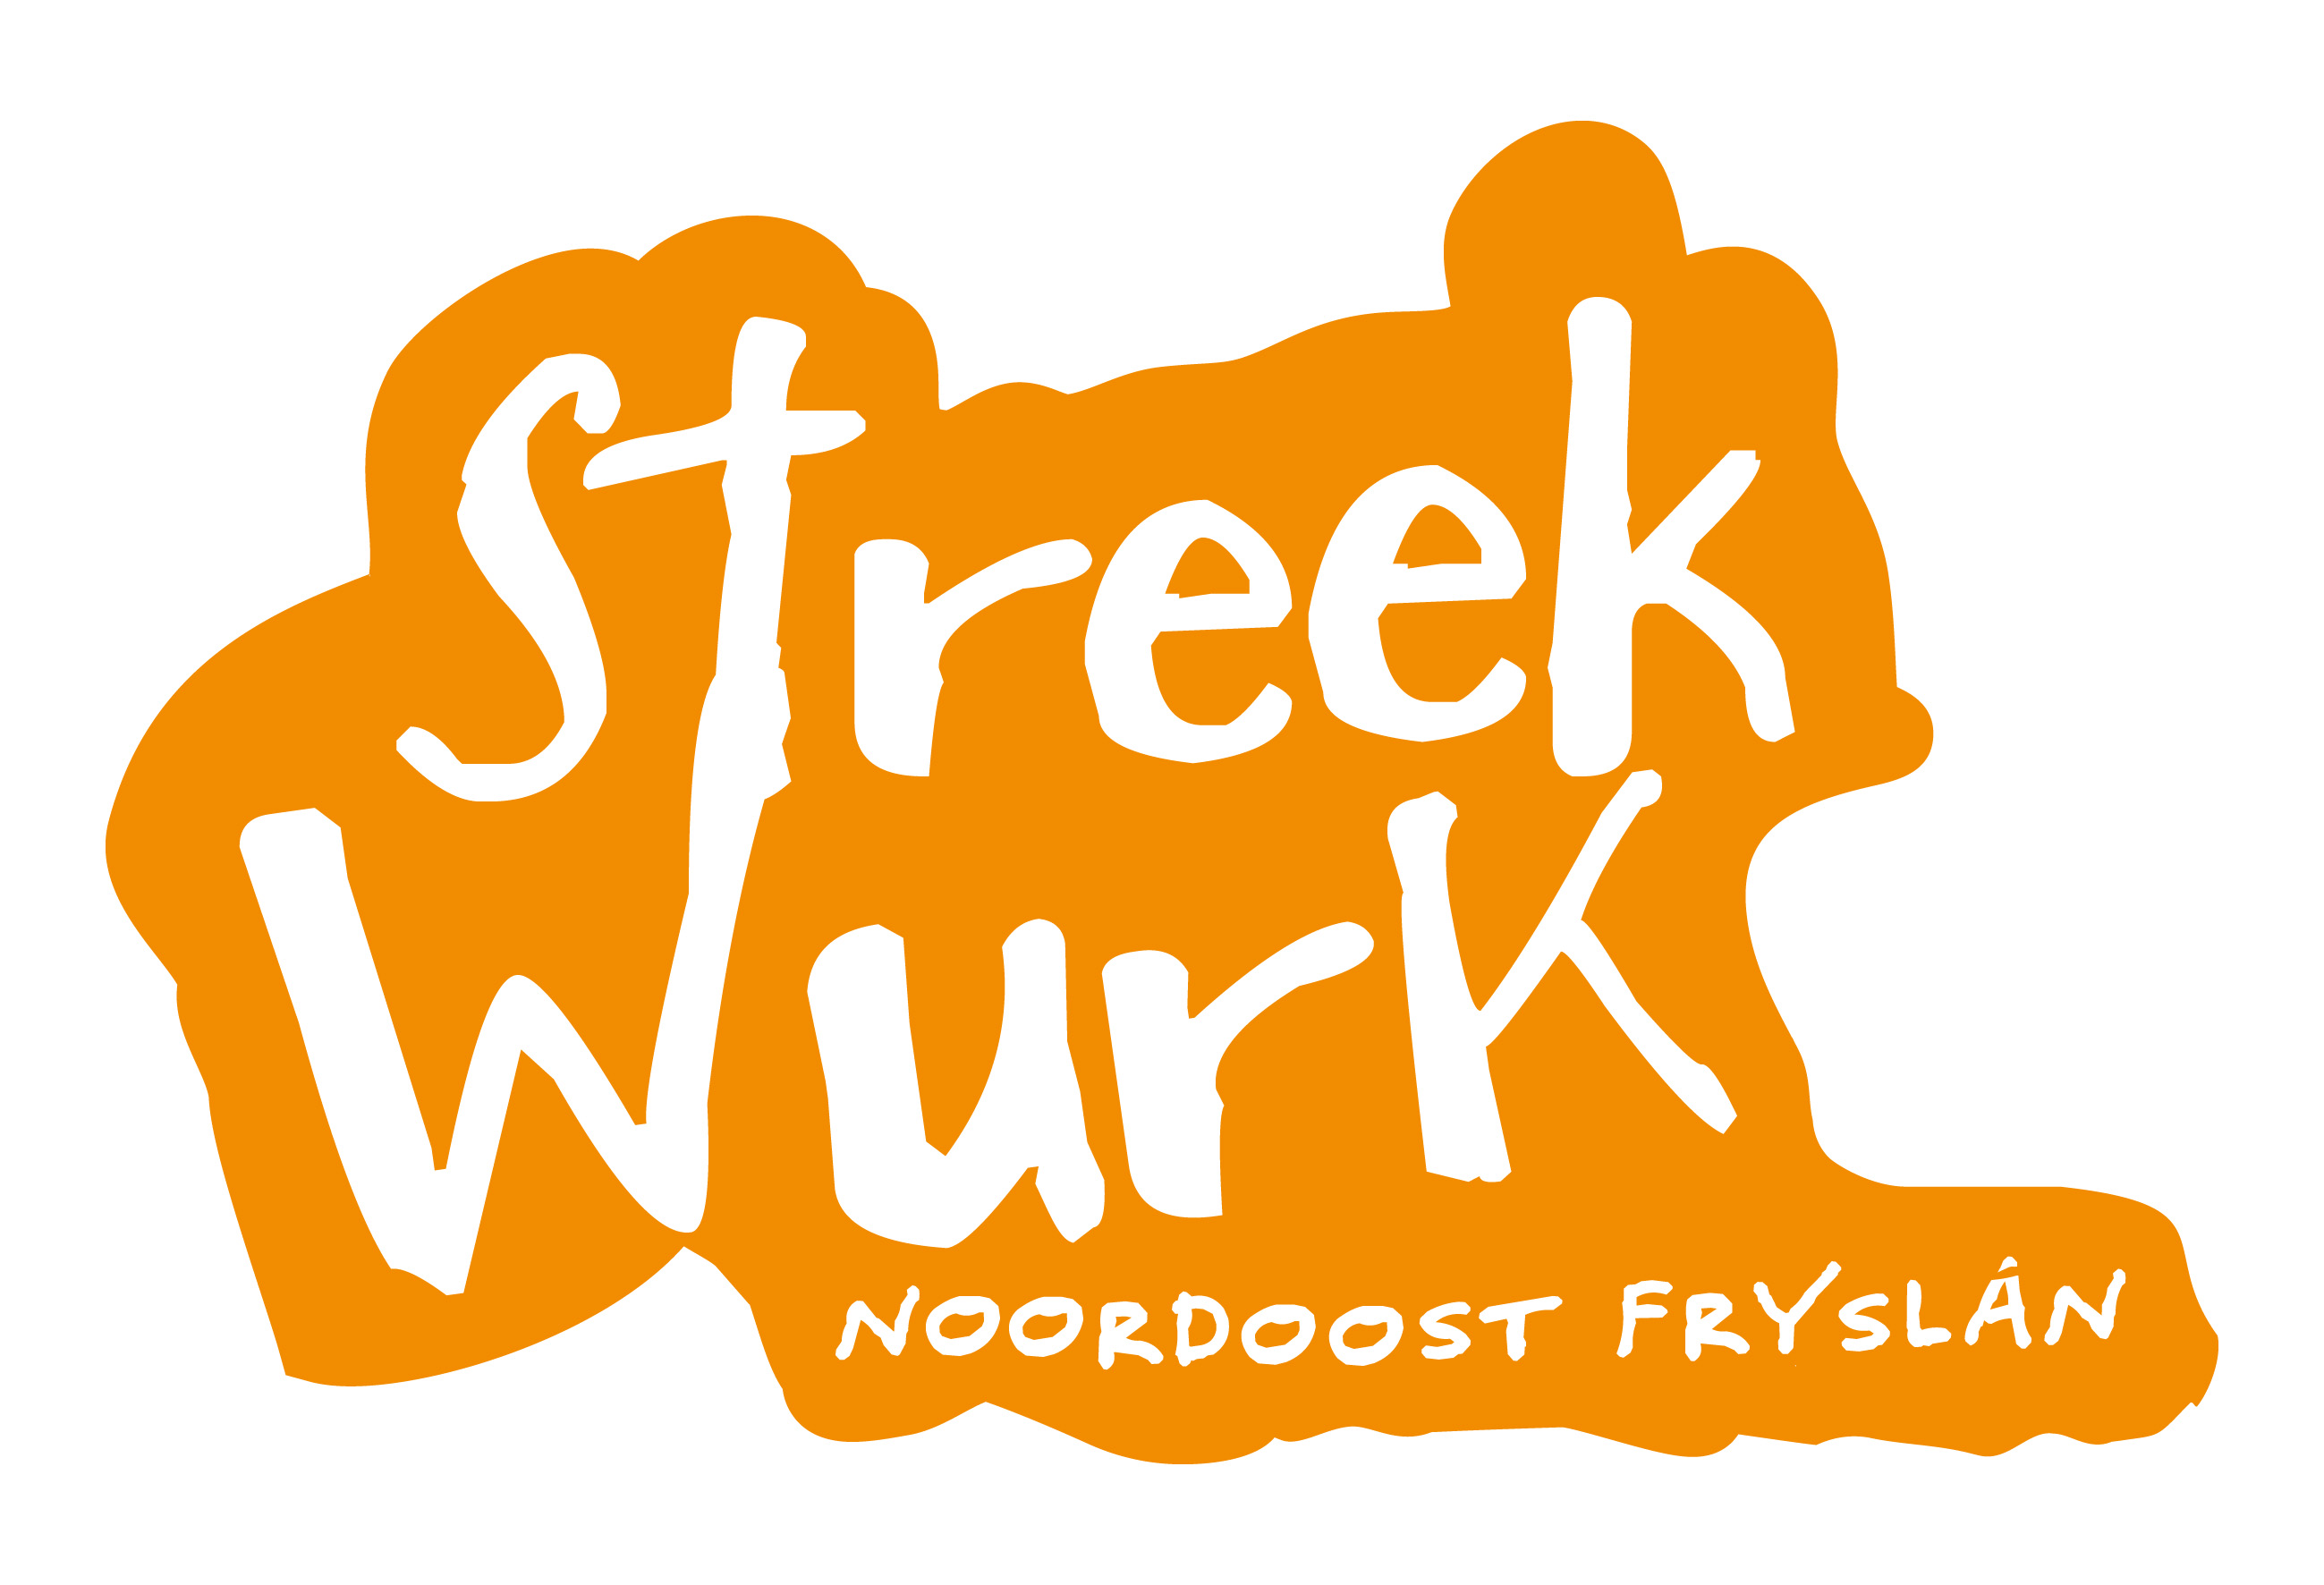 Logo Streekwurk Noardoost